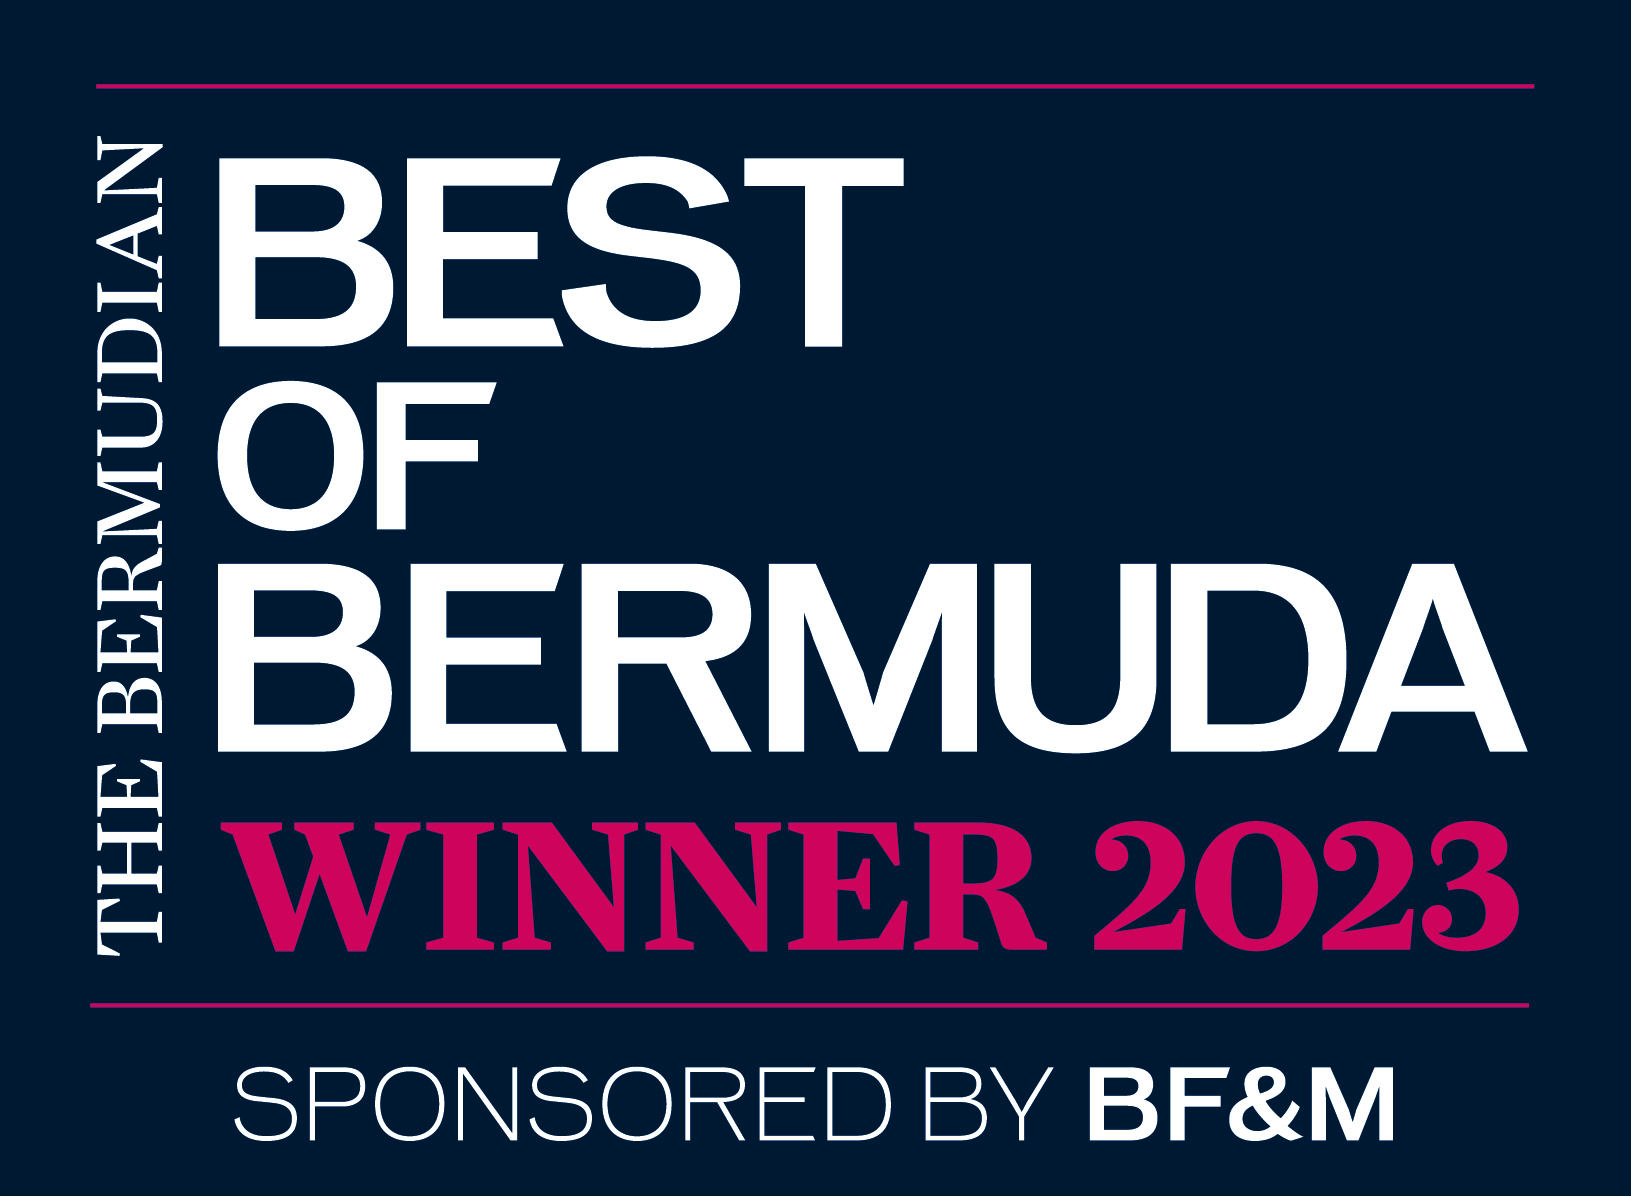 Best of Bermuda 2023 Winner